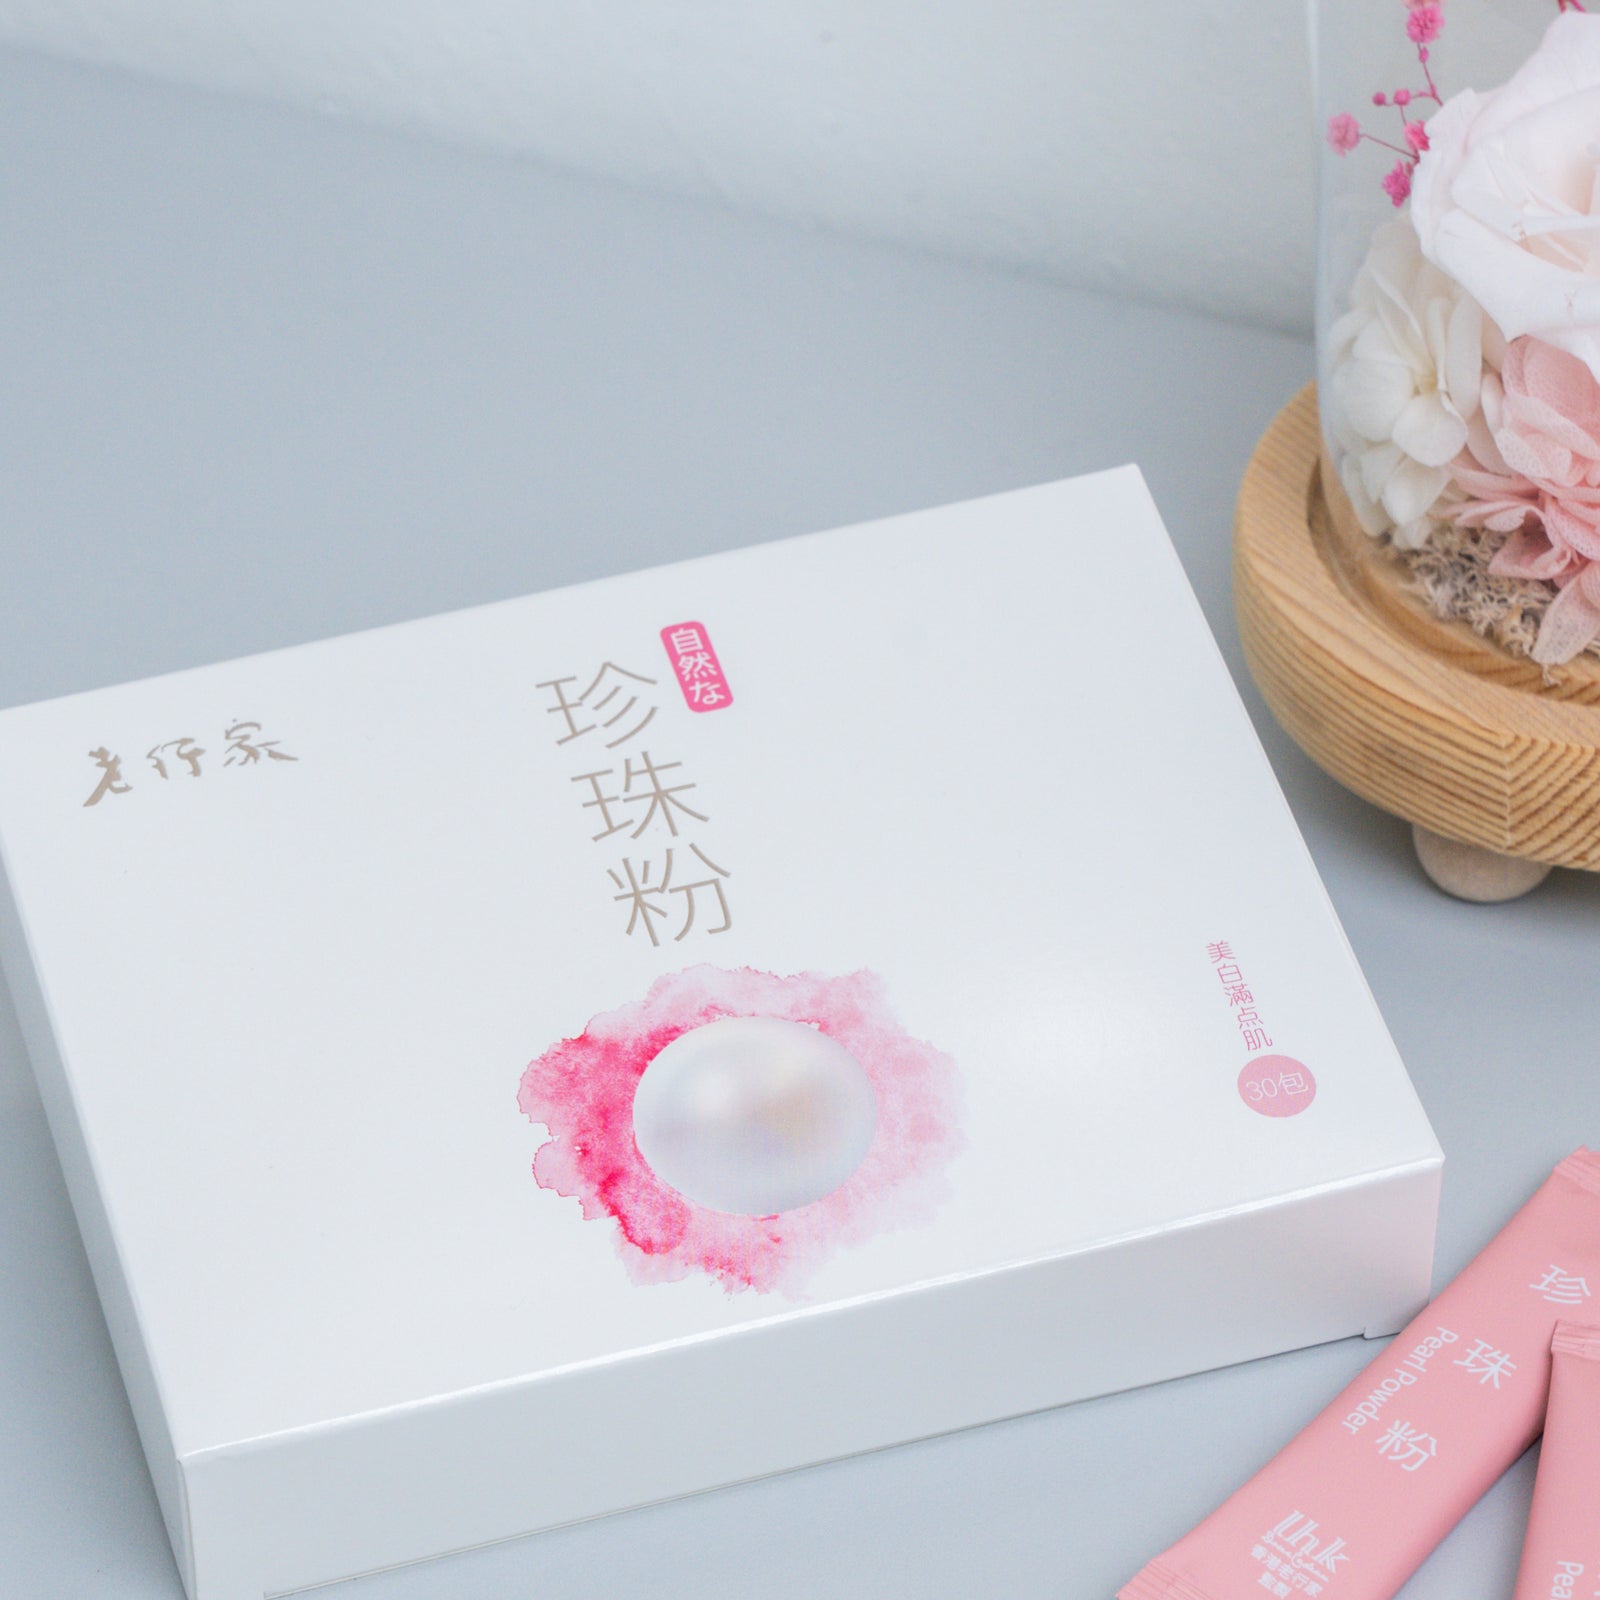 【3個月套裝】純珍珠粉 (30包裝) 6盒